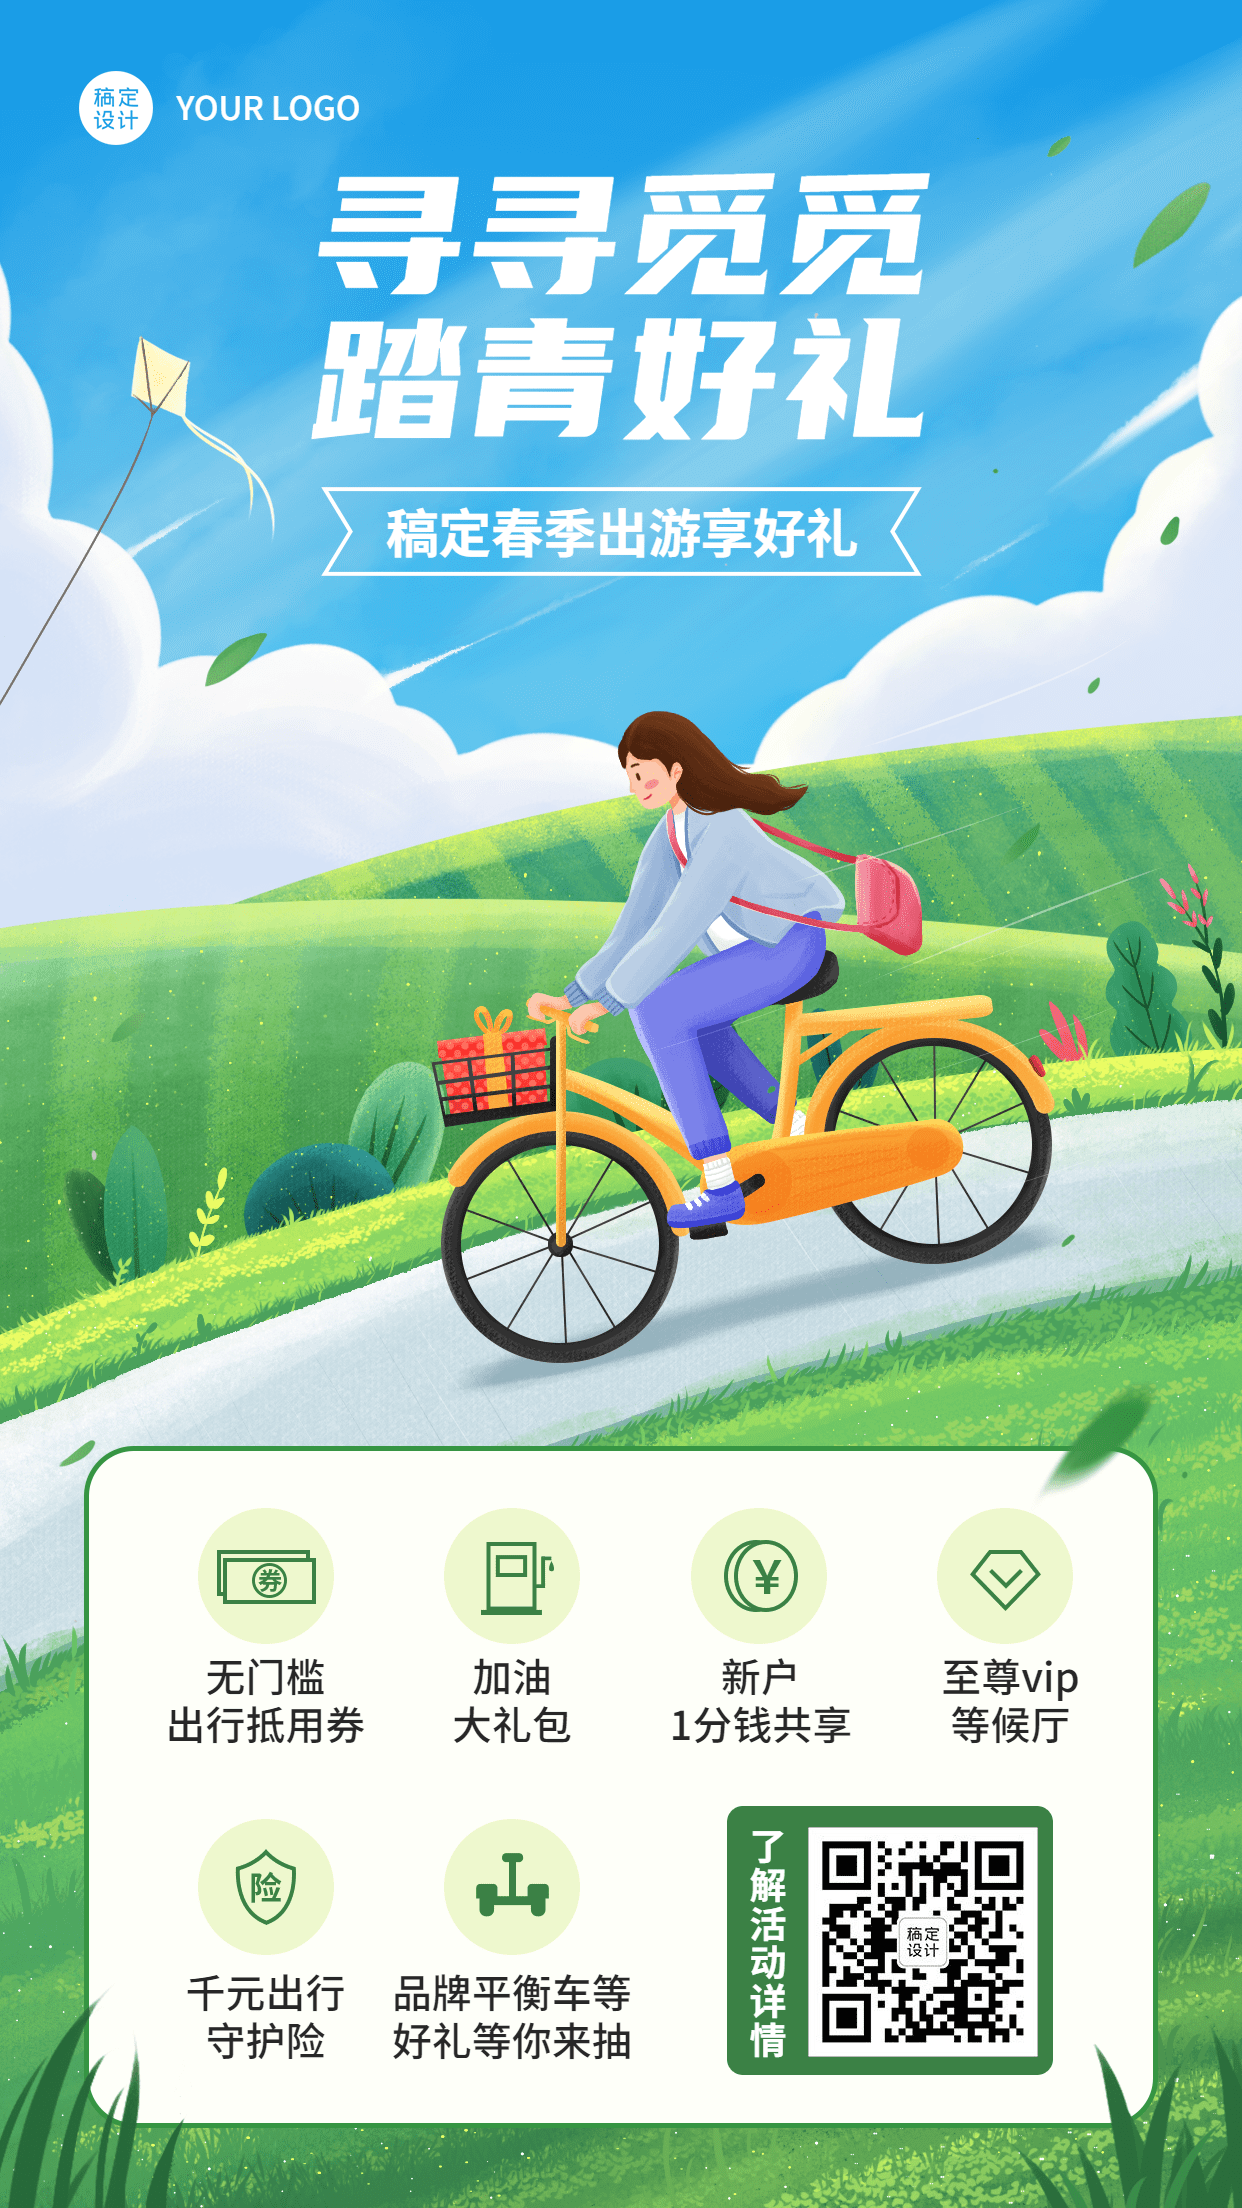 清明节金融保险春季踏青出游活动节日营销插画海报